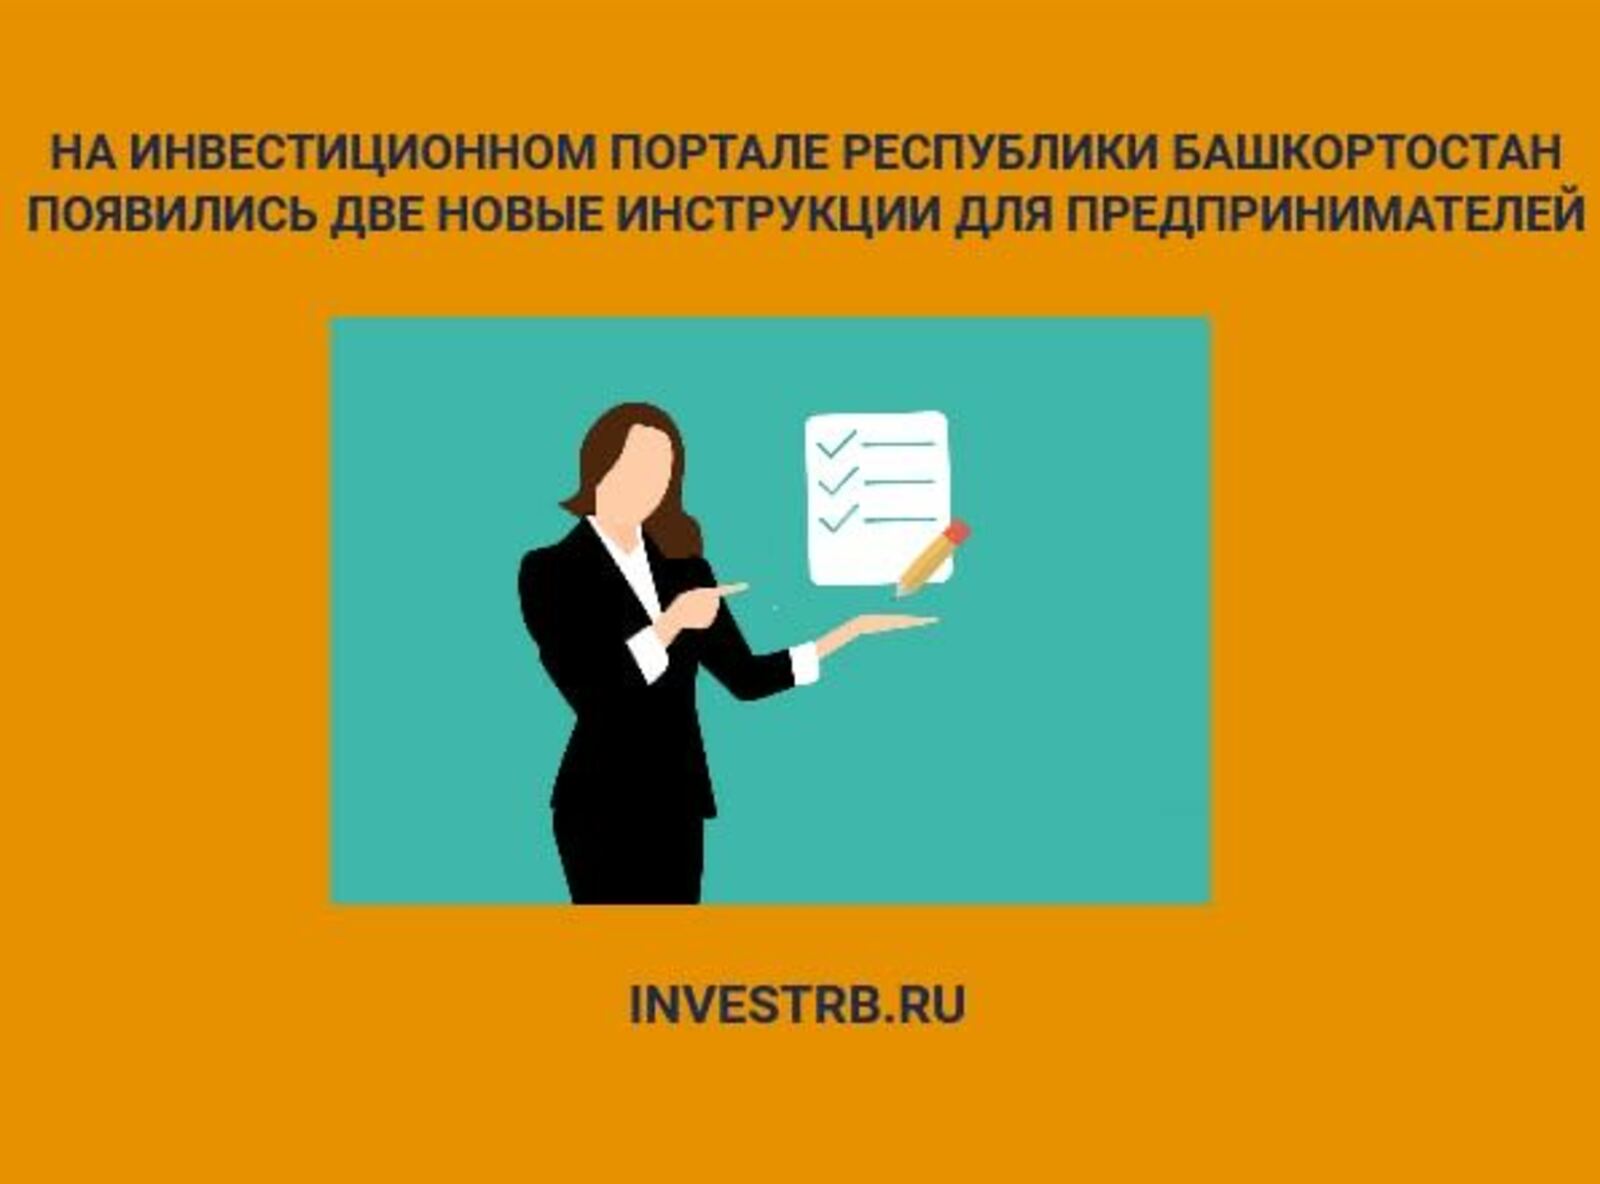 На INVESTRB.RU размещены новые инструкции для предпринимателей